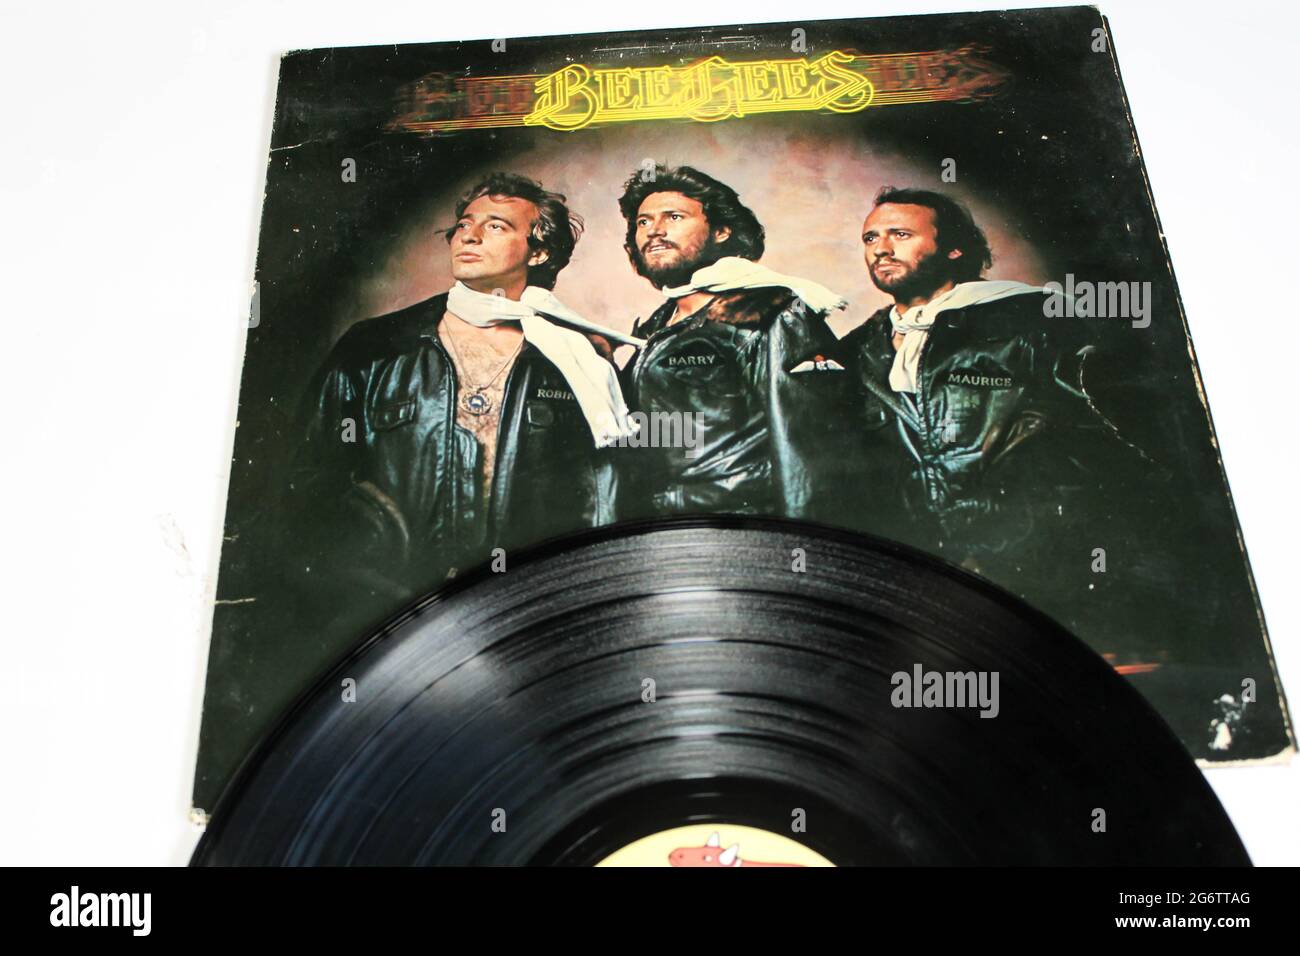 Disco- und Soul-Künstler, das Bee Gees-Musikalbum auf Vinyl-Schallplatte. Titel: Children of the World Albumcover Stockfoto